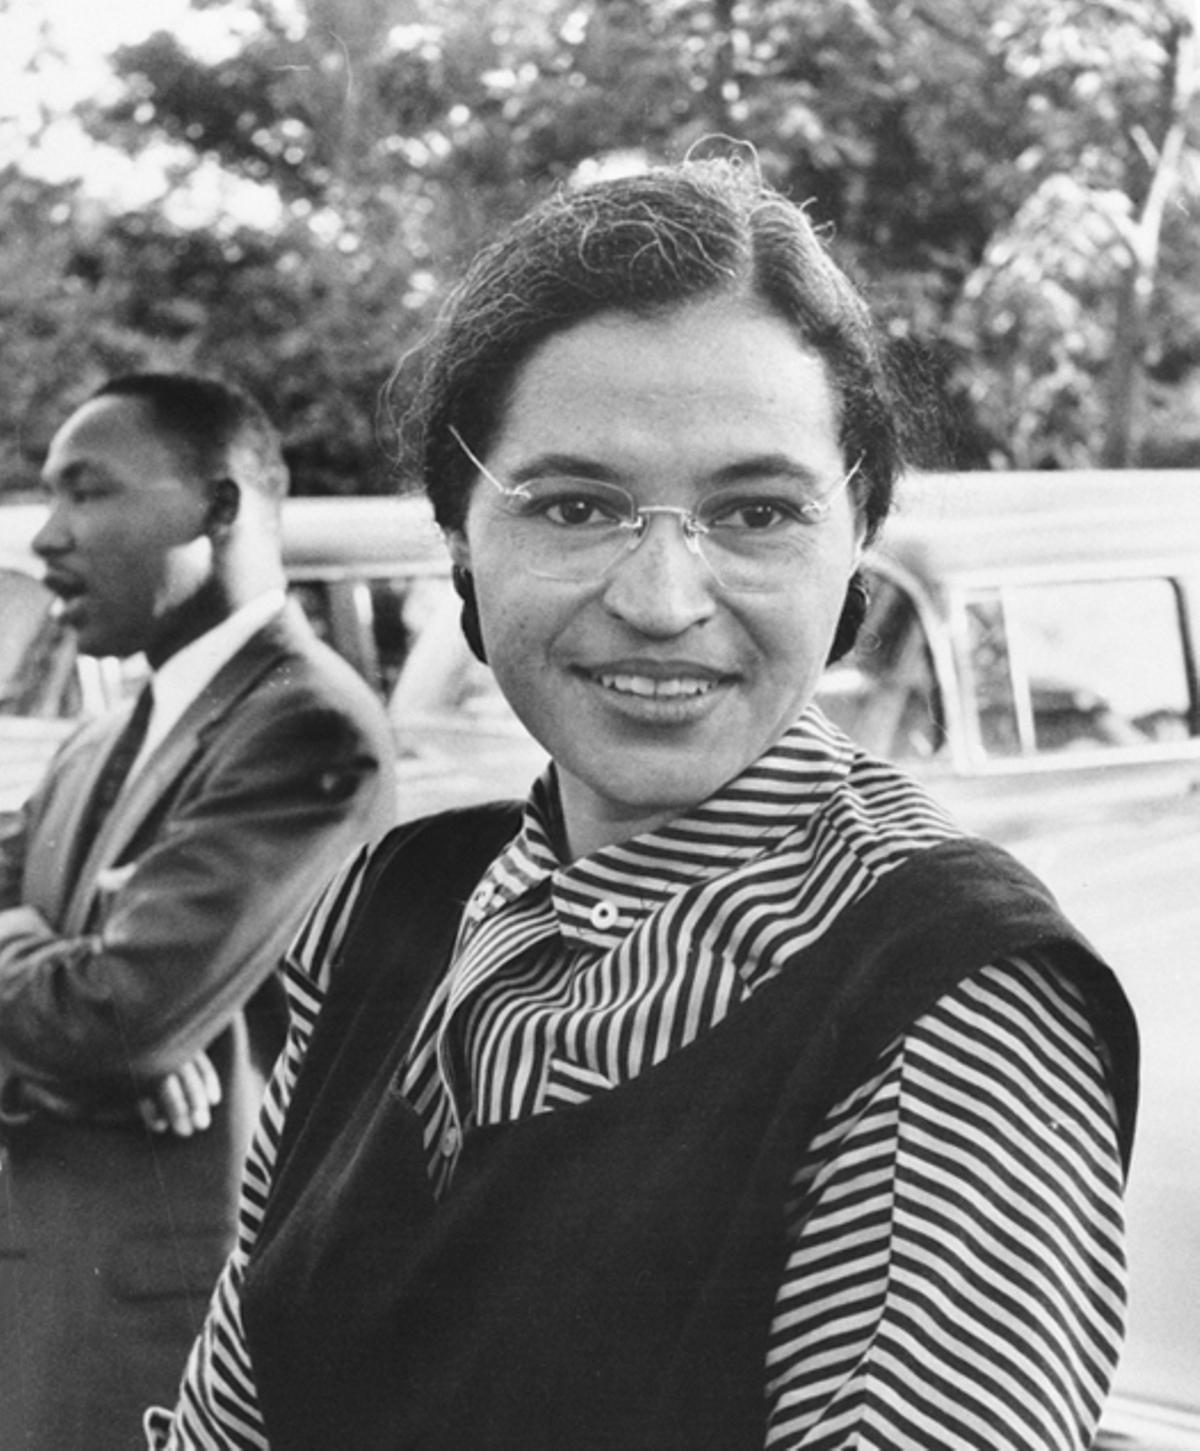 Rosa Parks (1913-2005). Activista y símbolo del movimiento americano por los derechos civiles, no solo fue feminista, también es icono de la lucha antirracista. Fue detenida por negarse a cederle su asiento en un autobús a un hombre blanco, hecho que llevó de forma indirecta a la legislación anti-apartheid en el sur de Estados Unidos.